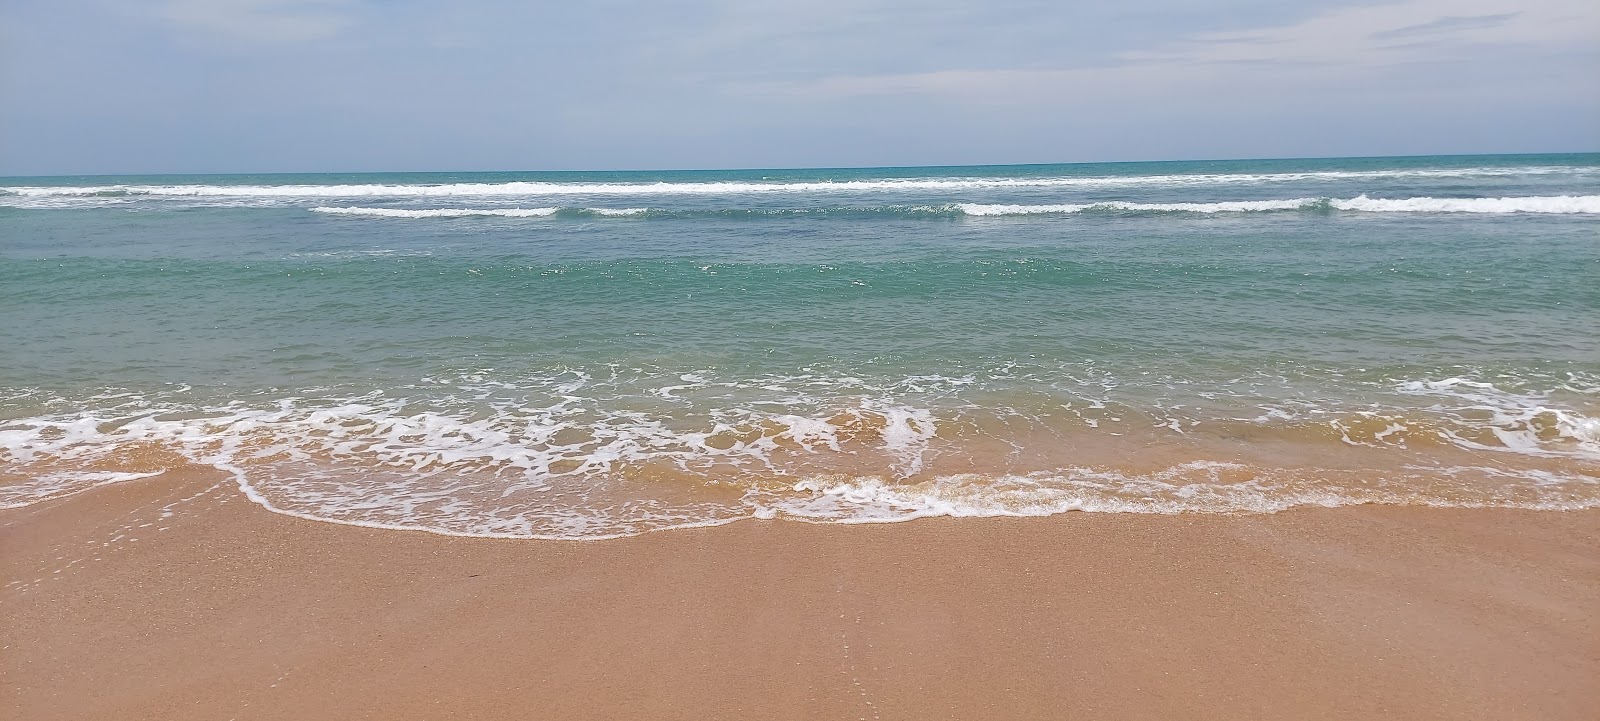 Kooduthalai beach'in fotoğrafı turkuaz saf su yüzey ile